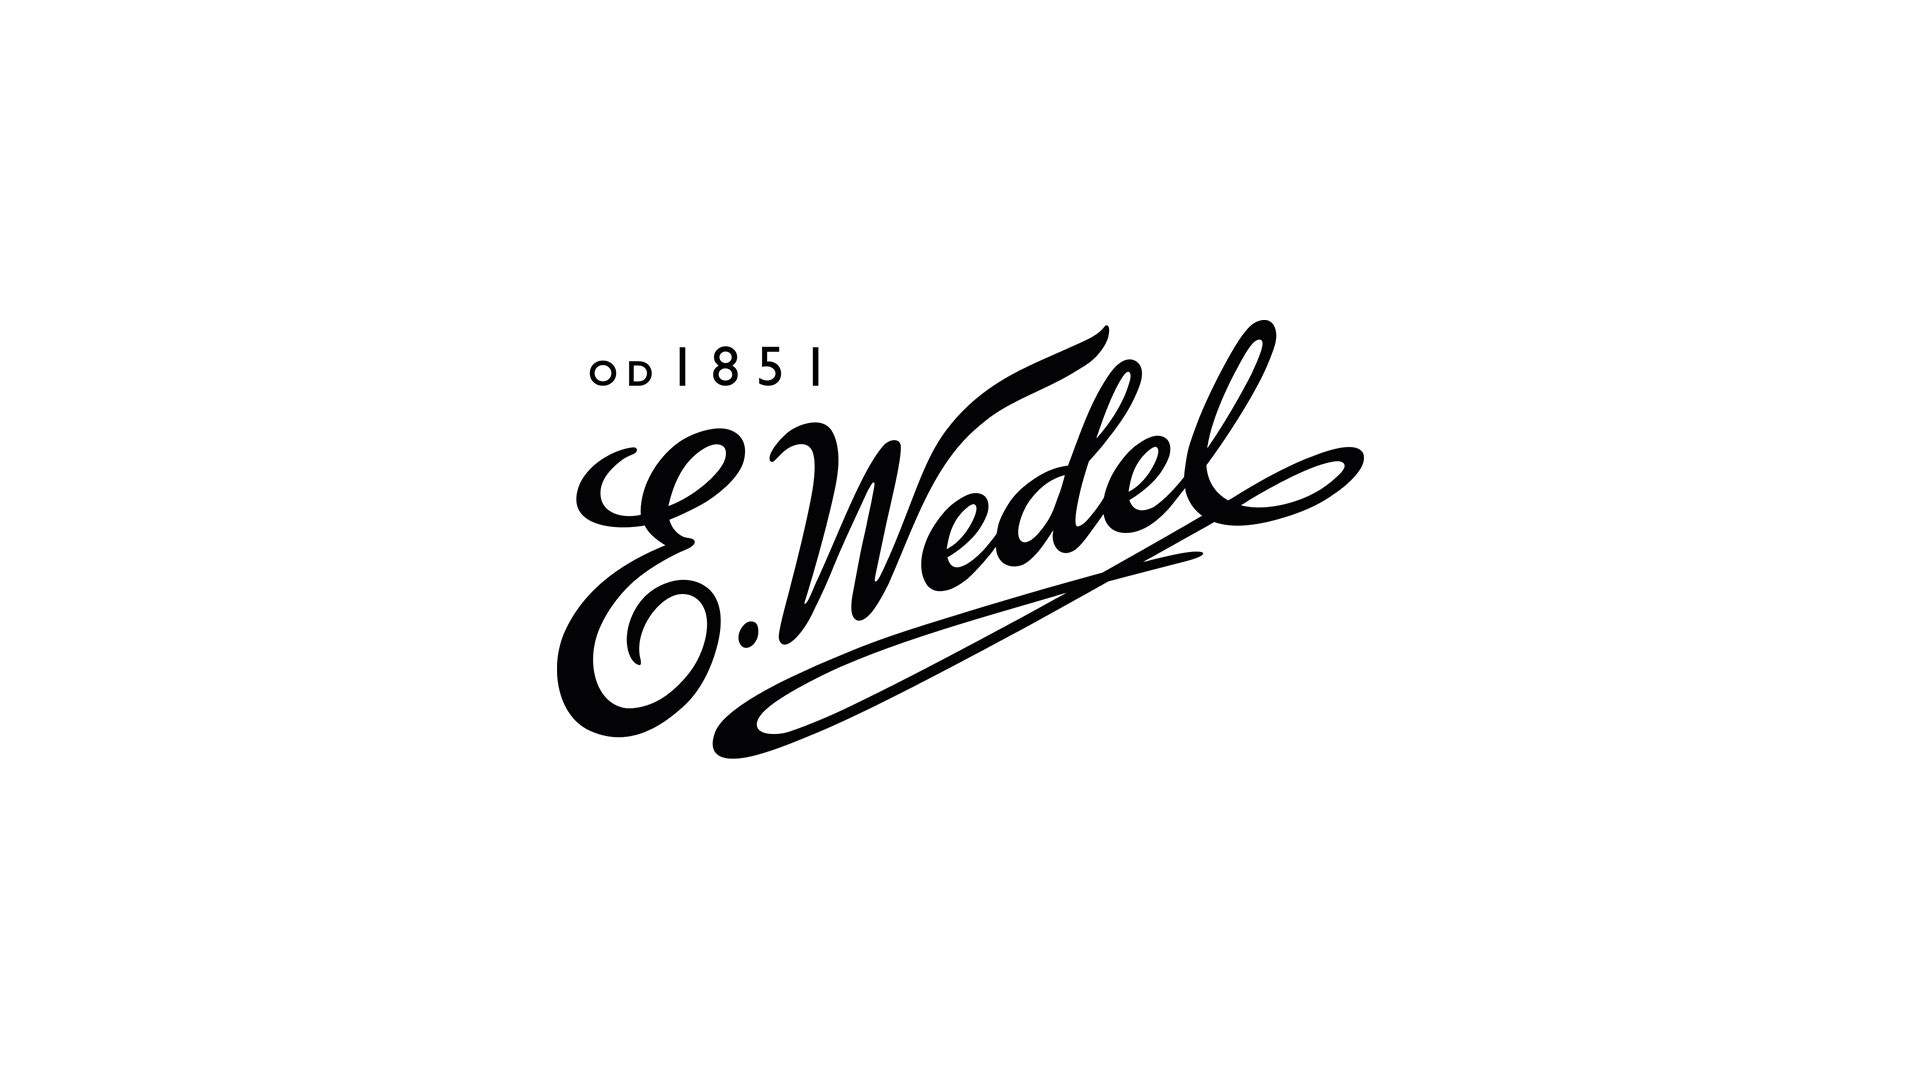 E Wedel